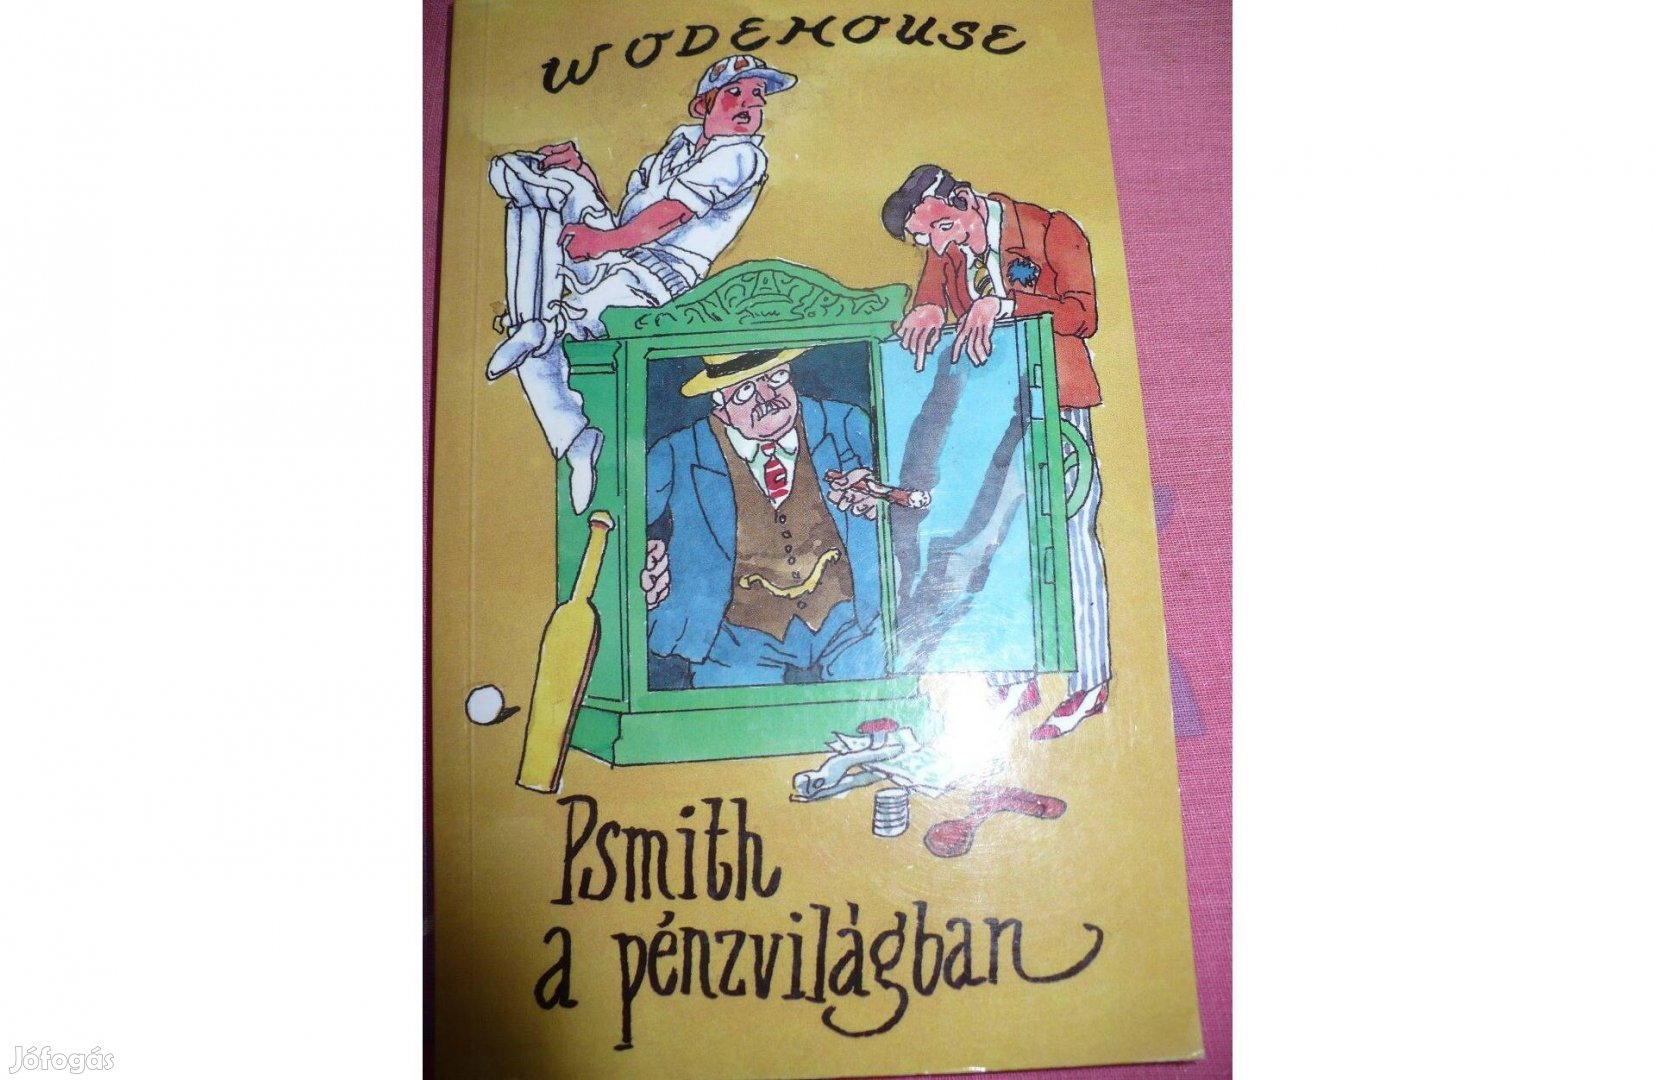 Woodhouse: Psmith a pénzvilágban